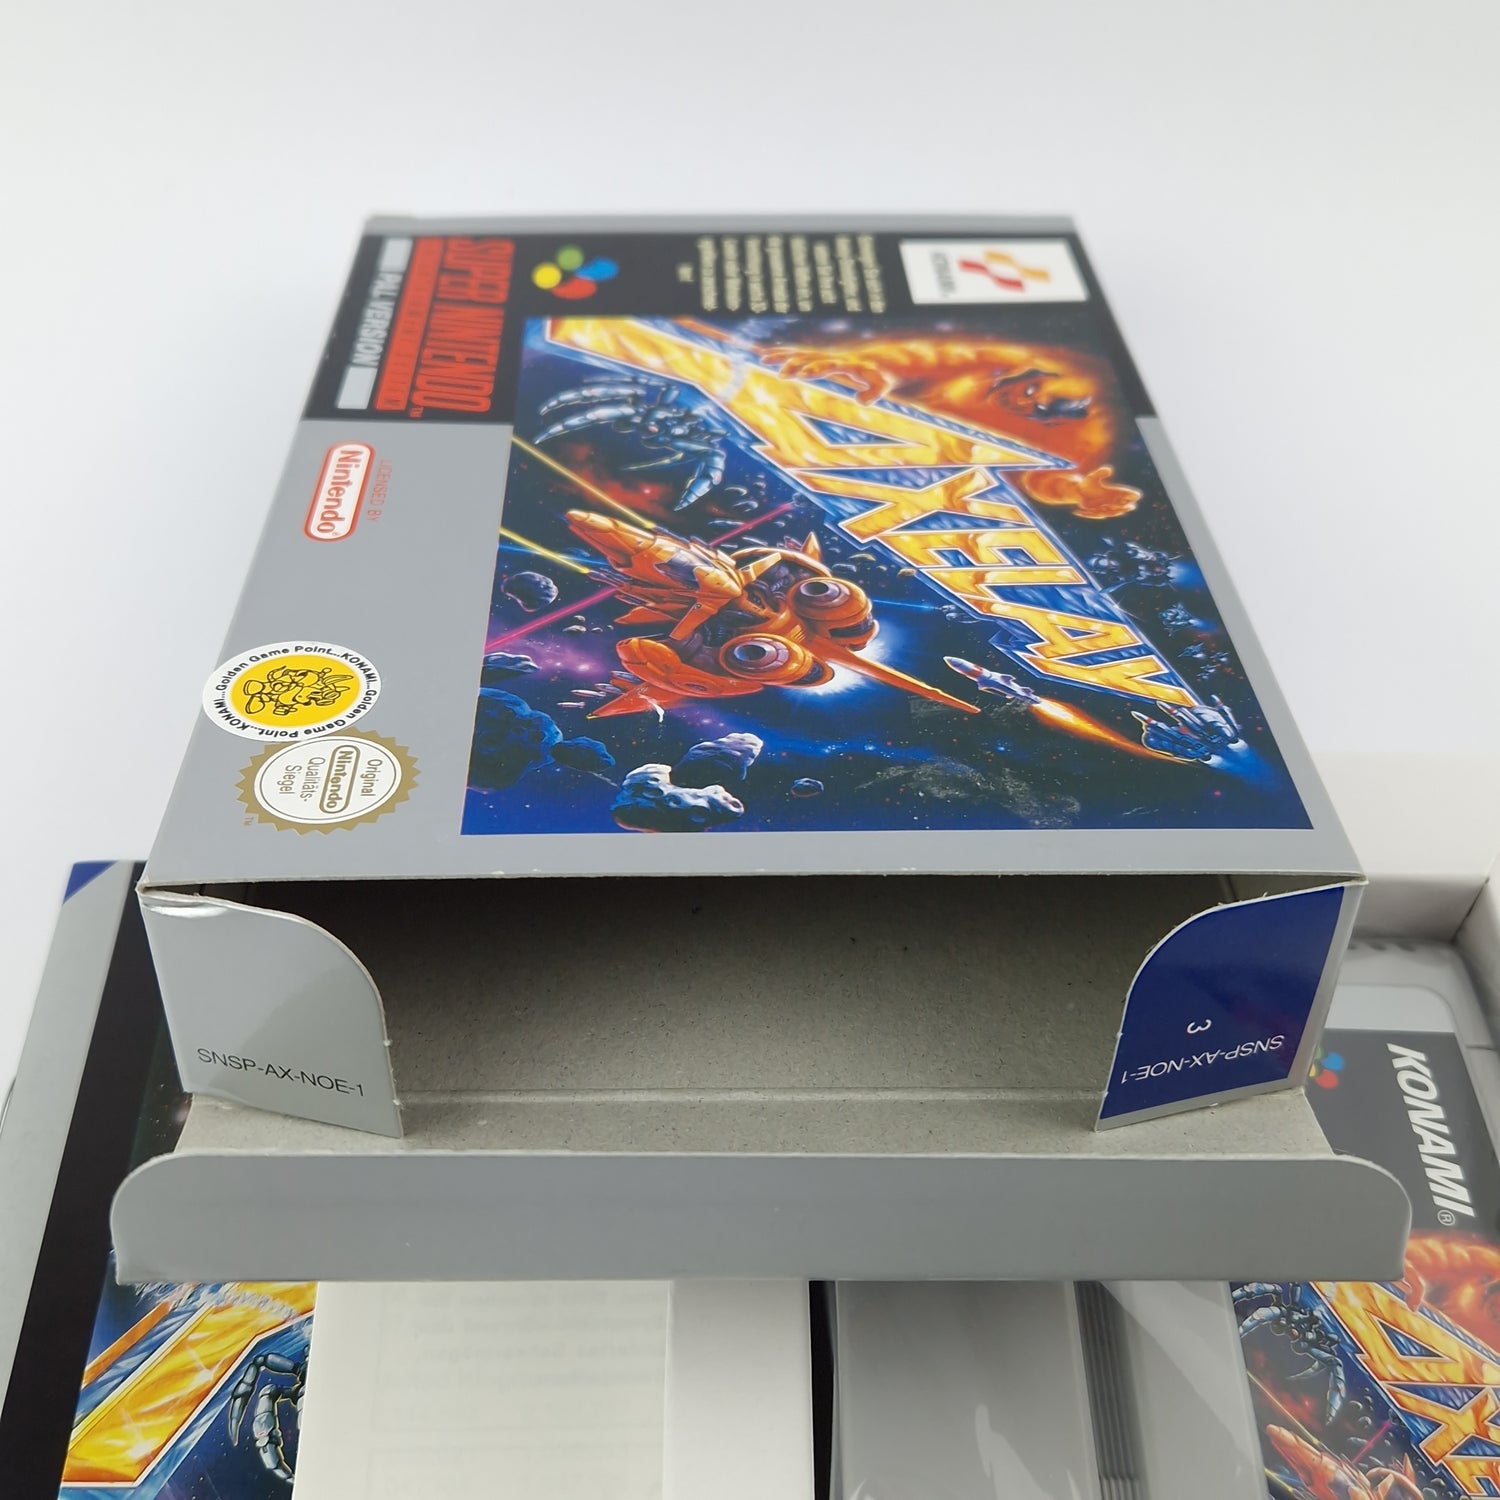 Super Nintendo Spiel : Axelay - Modul Anleitung OVP cib / SNES PAL NOE Konami